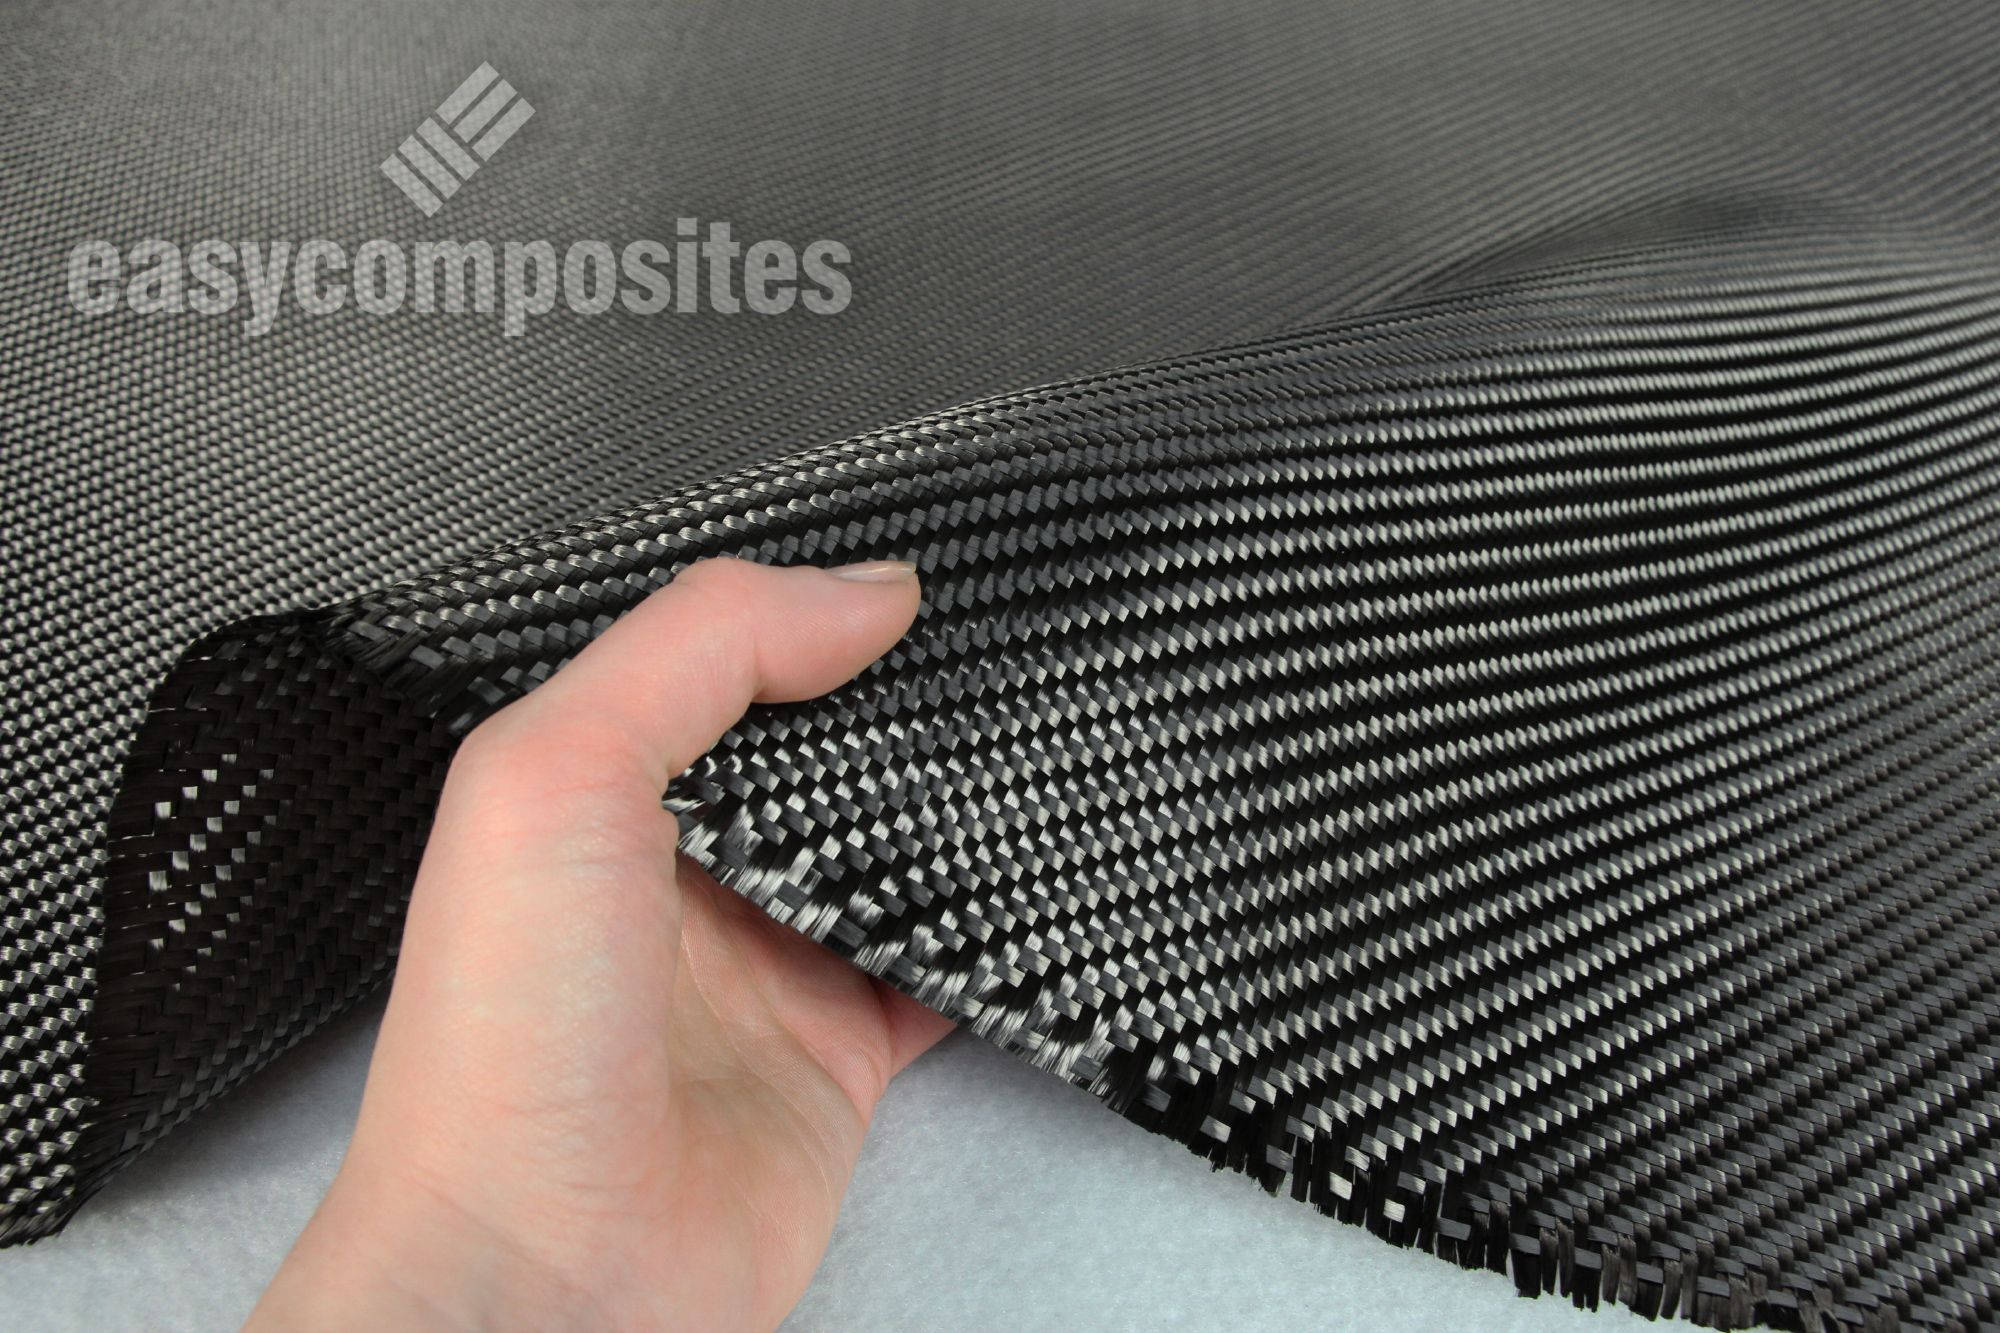 215 g/m2 Kevlar/Carbon fibre Twill 2x2